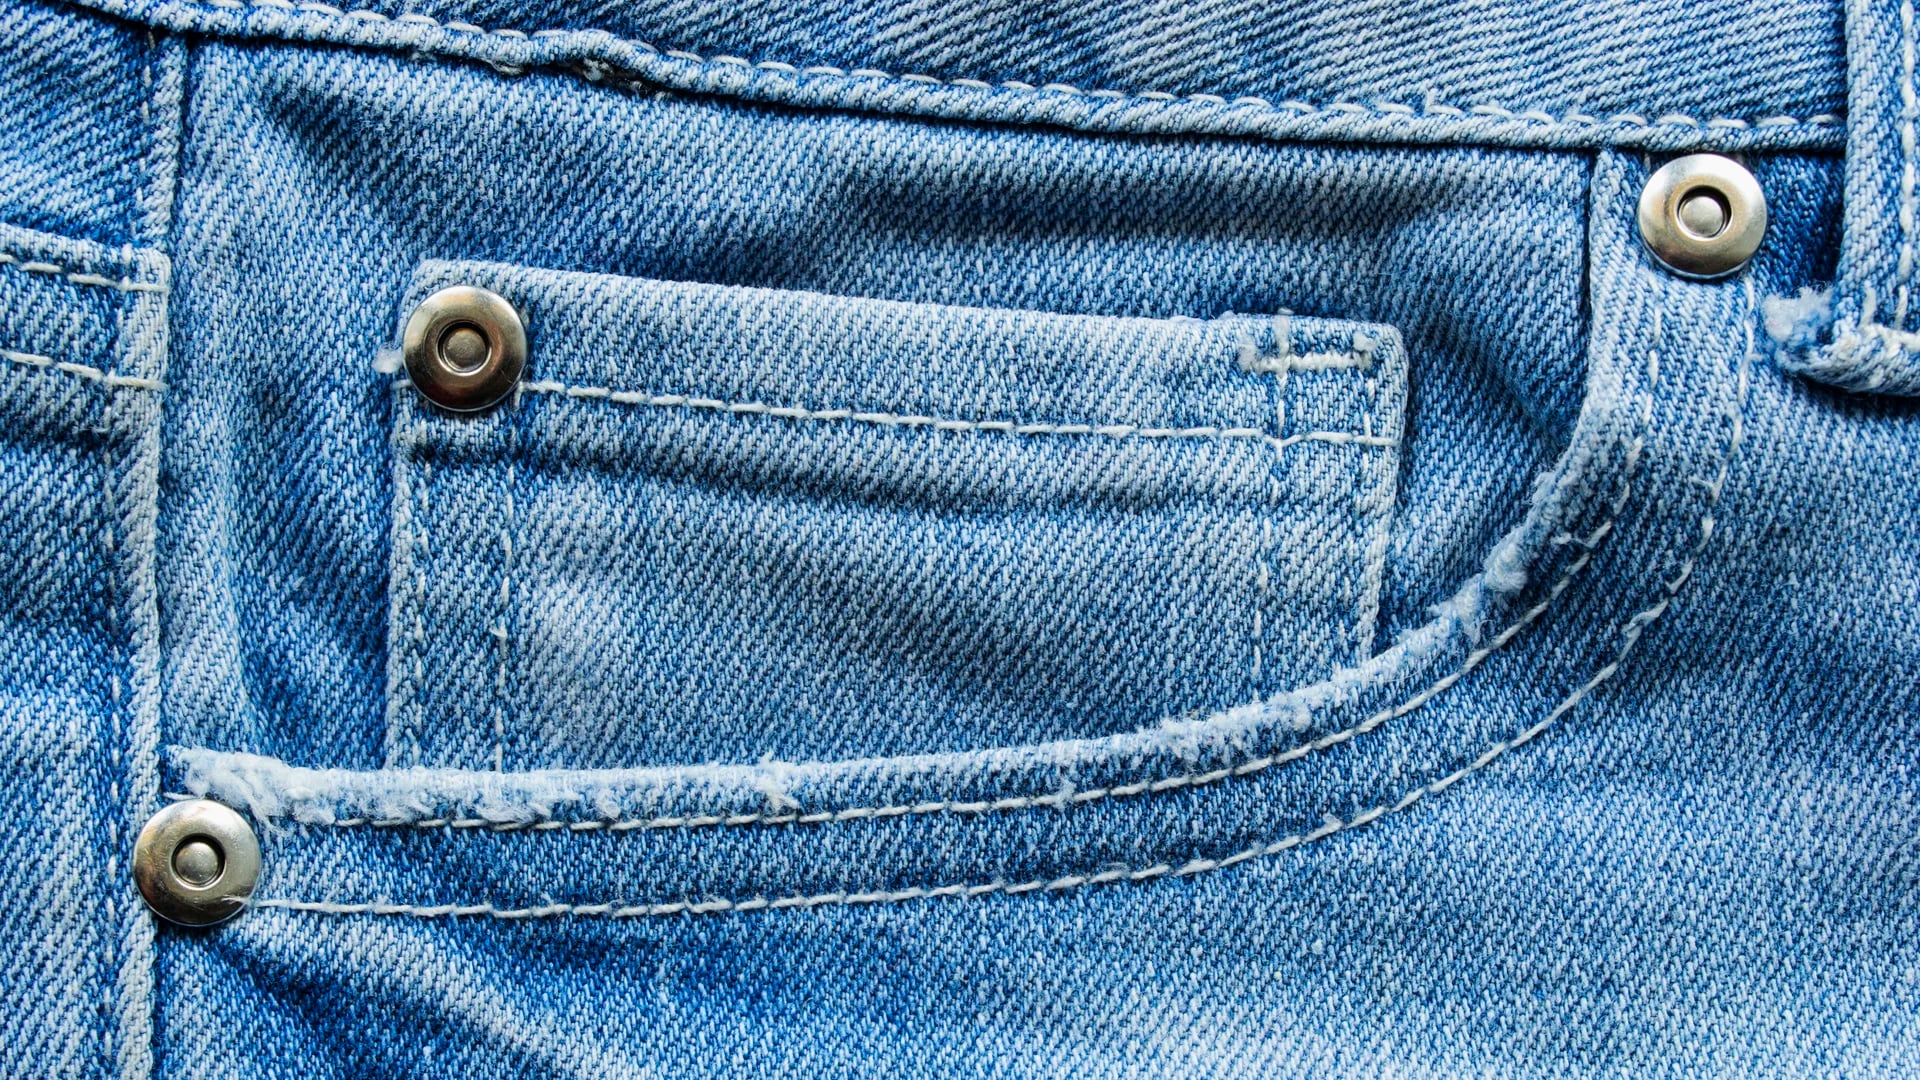 Lavar los jeans asiduamente tiene un impacto negativo en el ambiente (Getty Images)